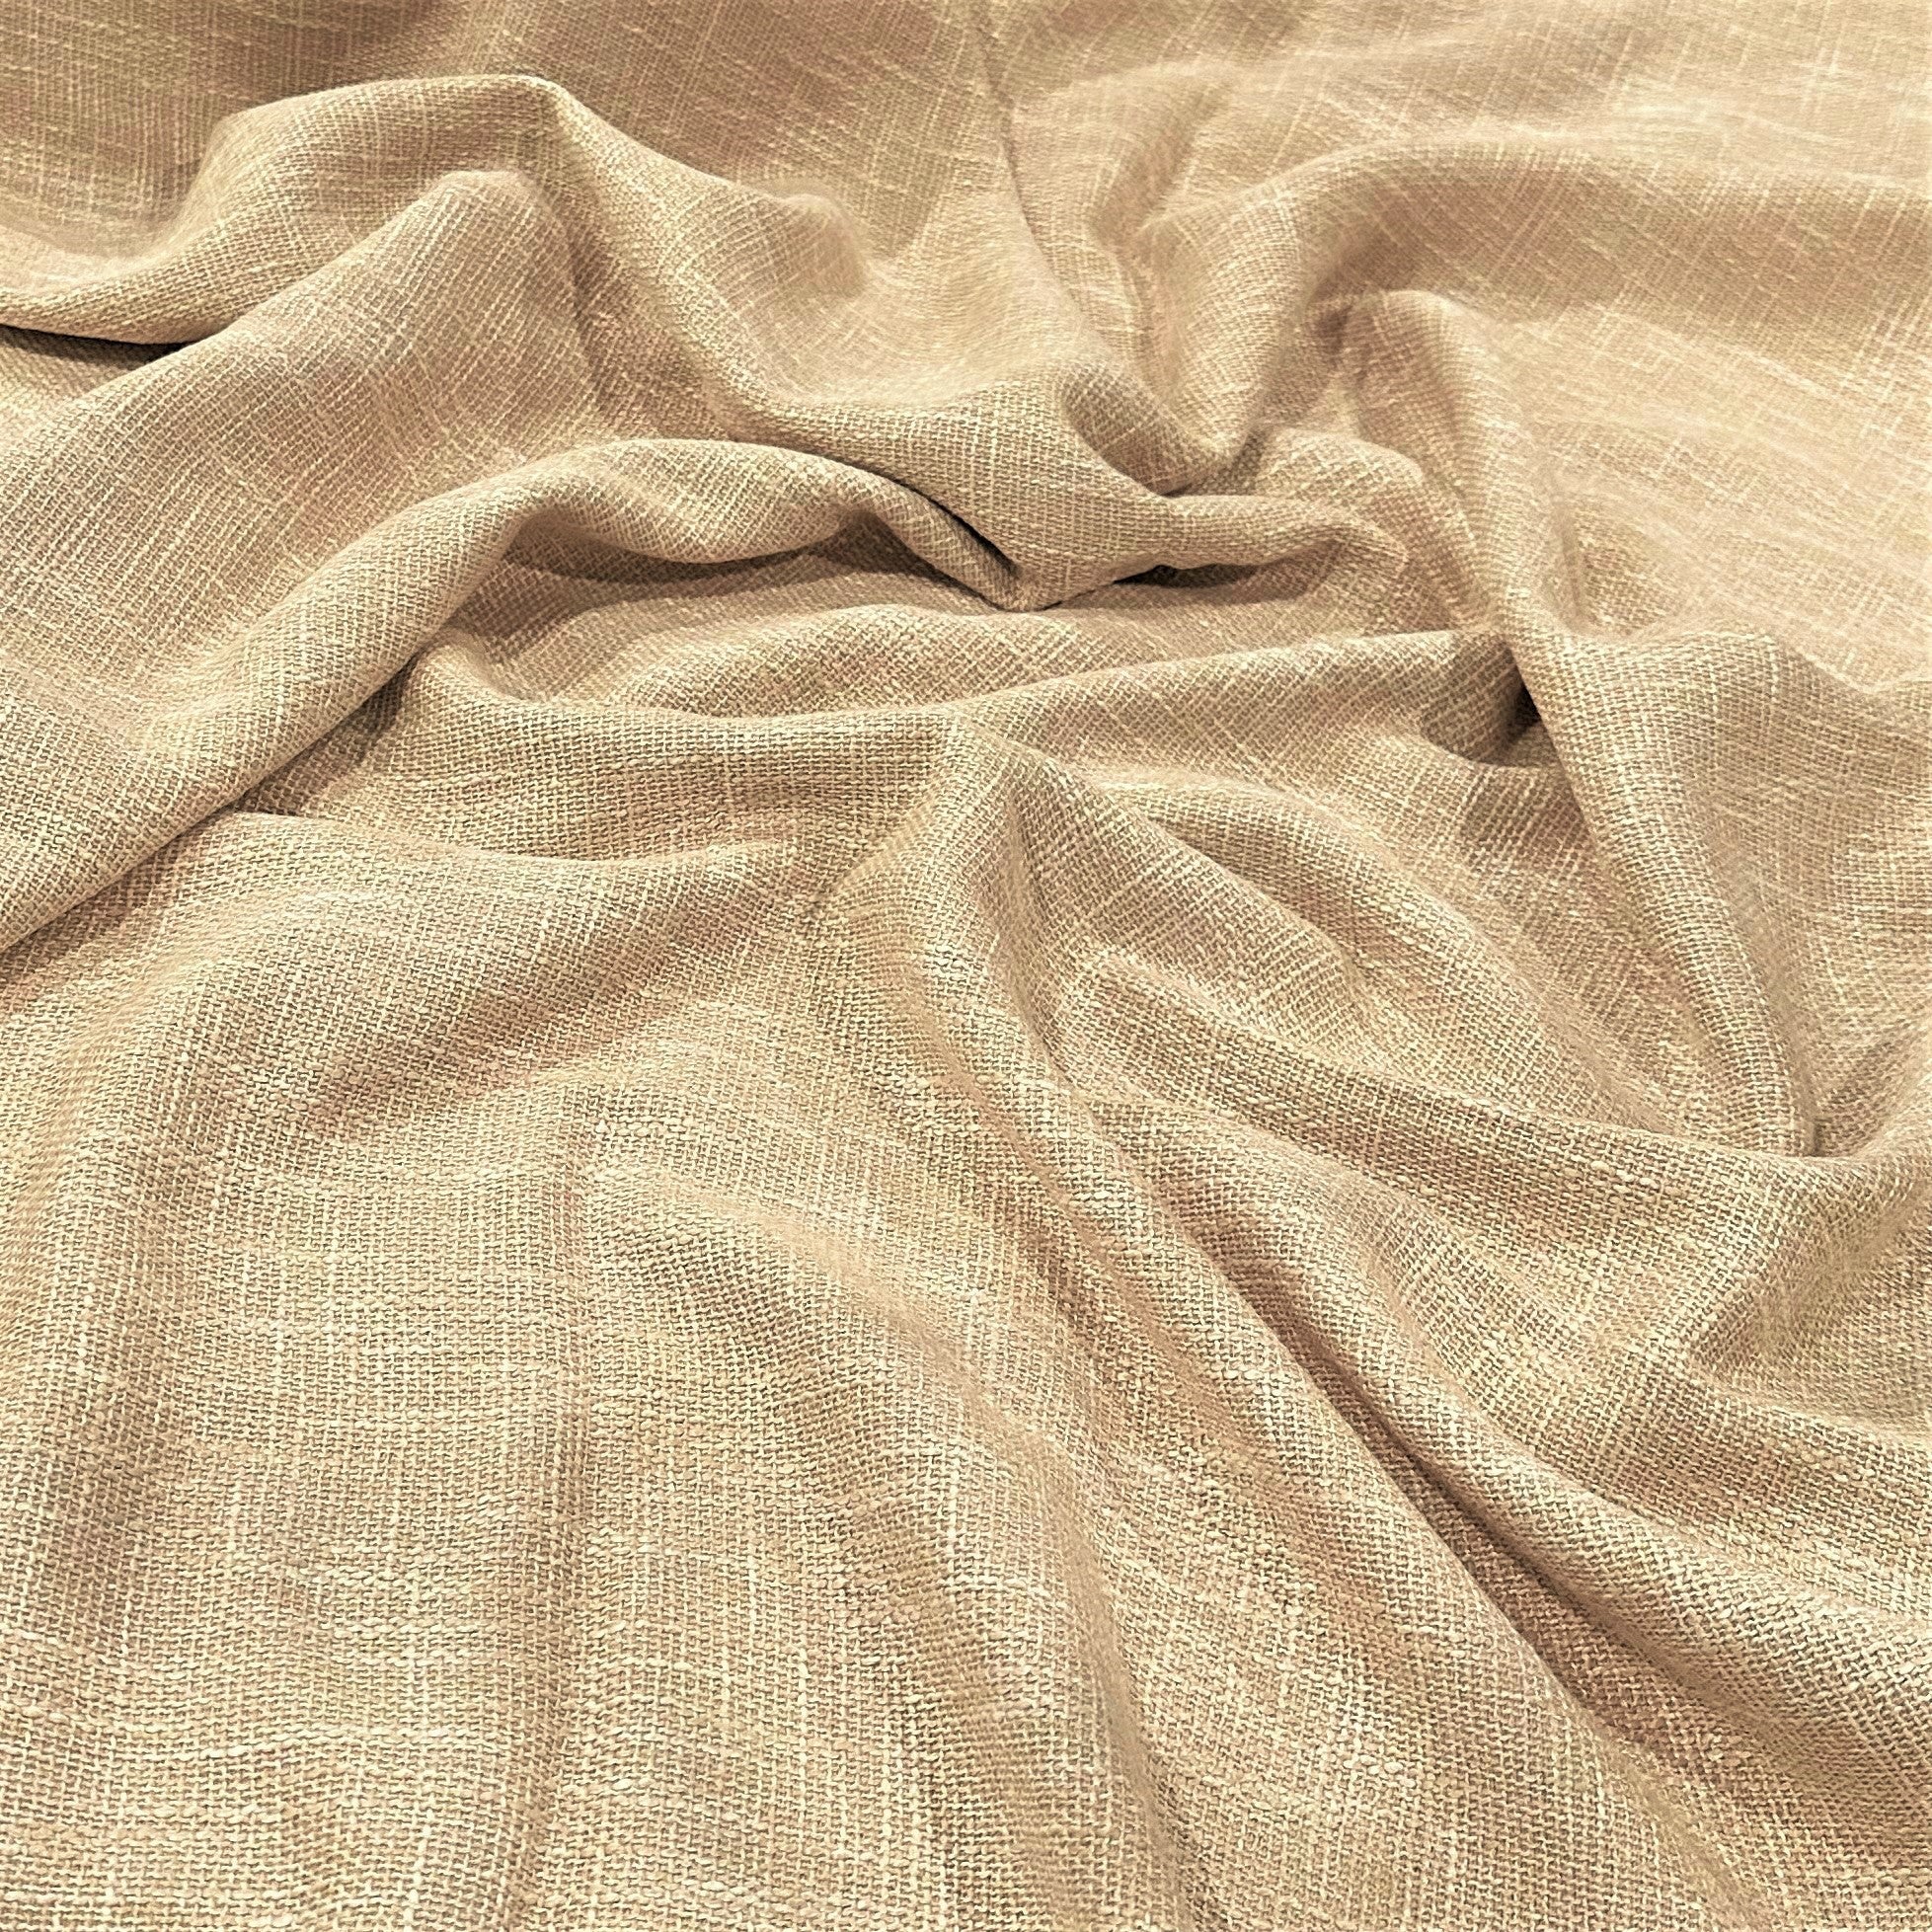 Capri Slub Linen Wholesale Fabric in Taupe – Urquid Linen